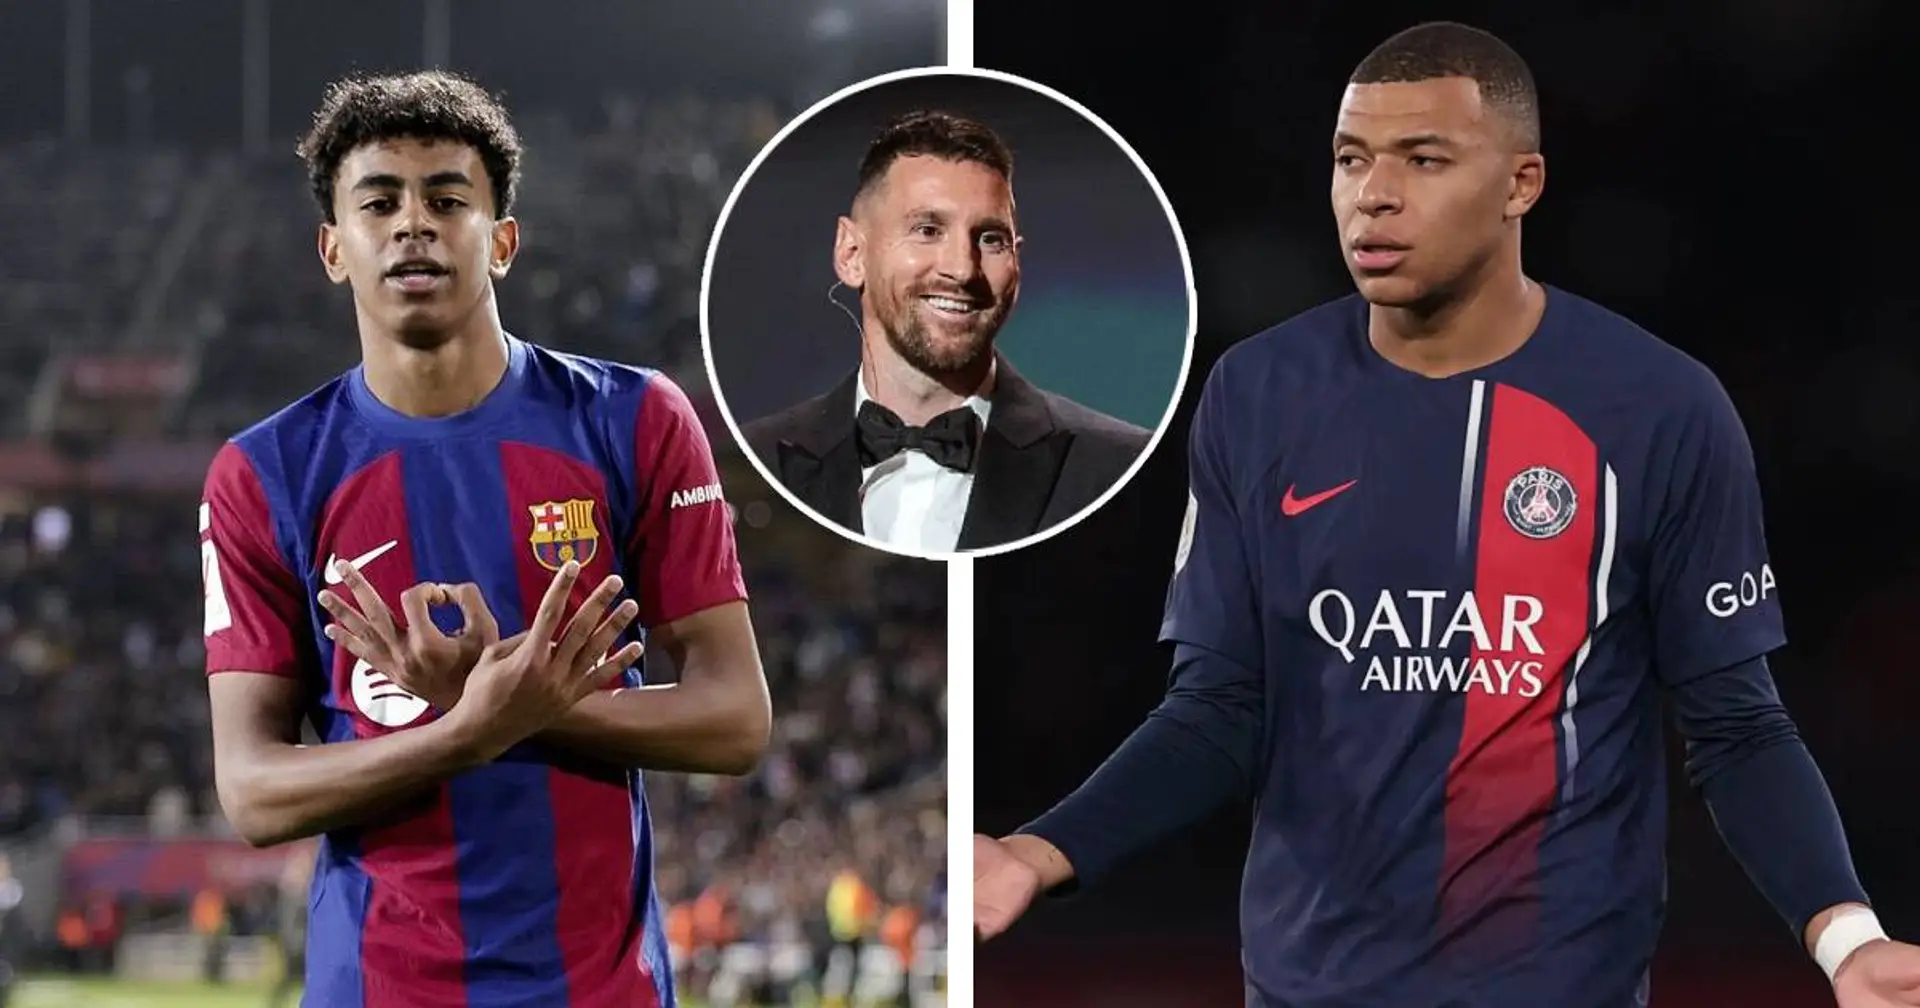 Messi nomme 4 vainqueurs potentiels du Ballon d'Or dont une surprise - UN joue pour le PSG 